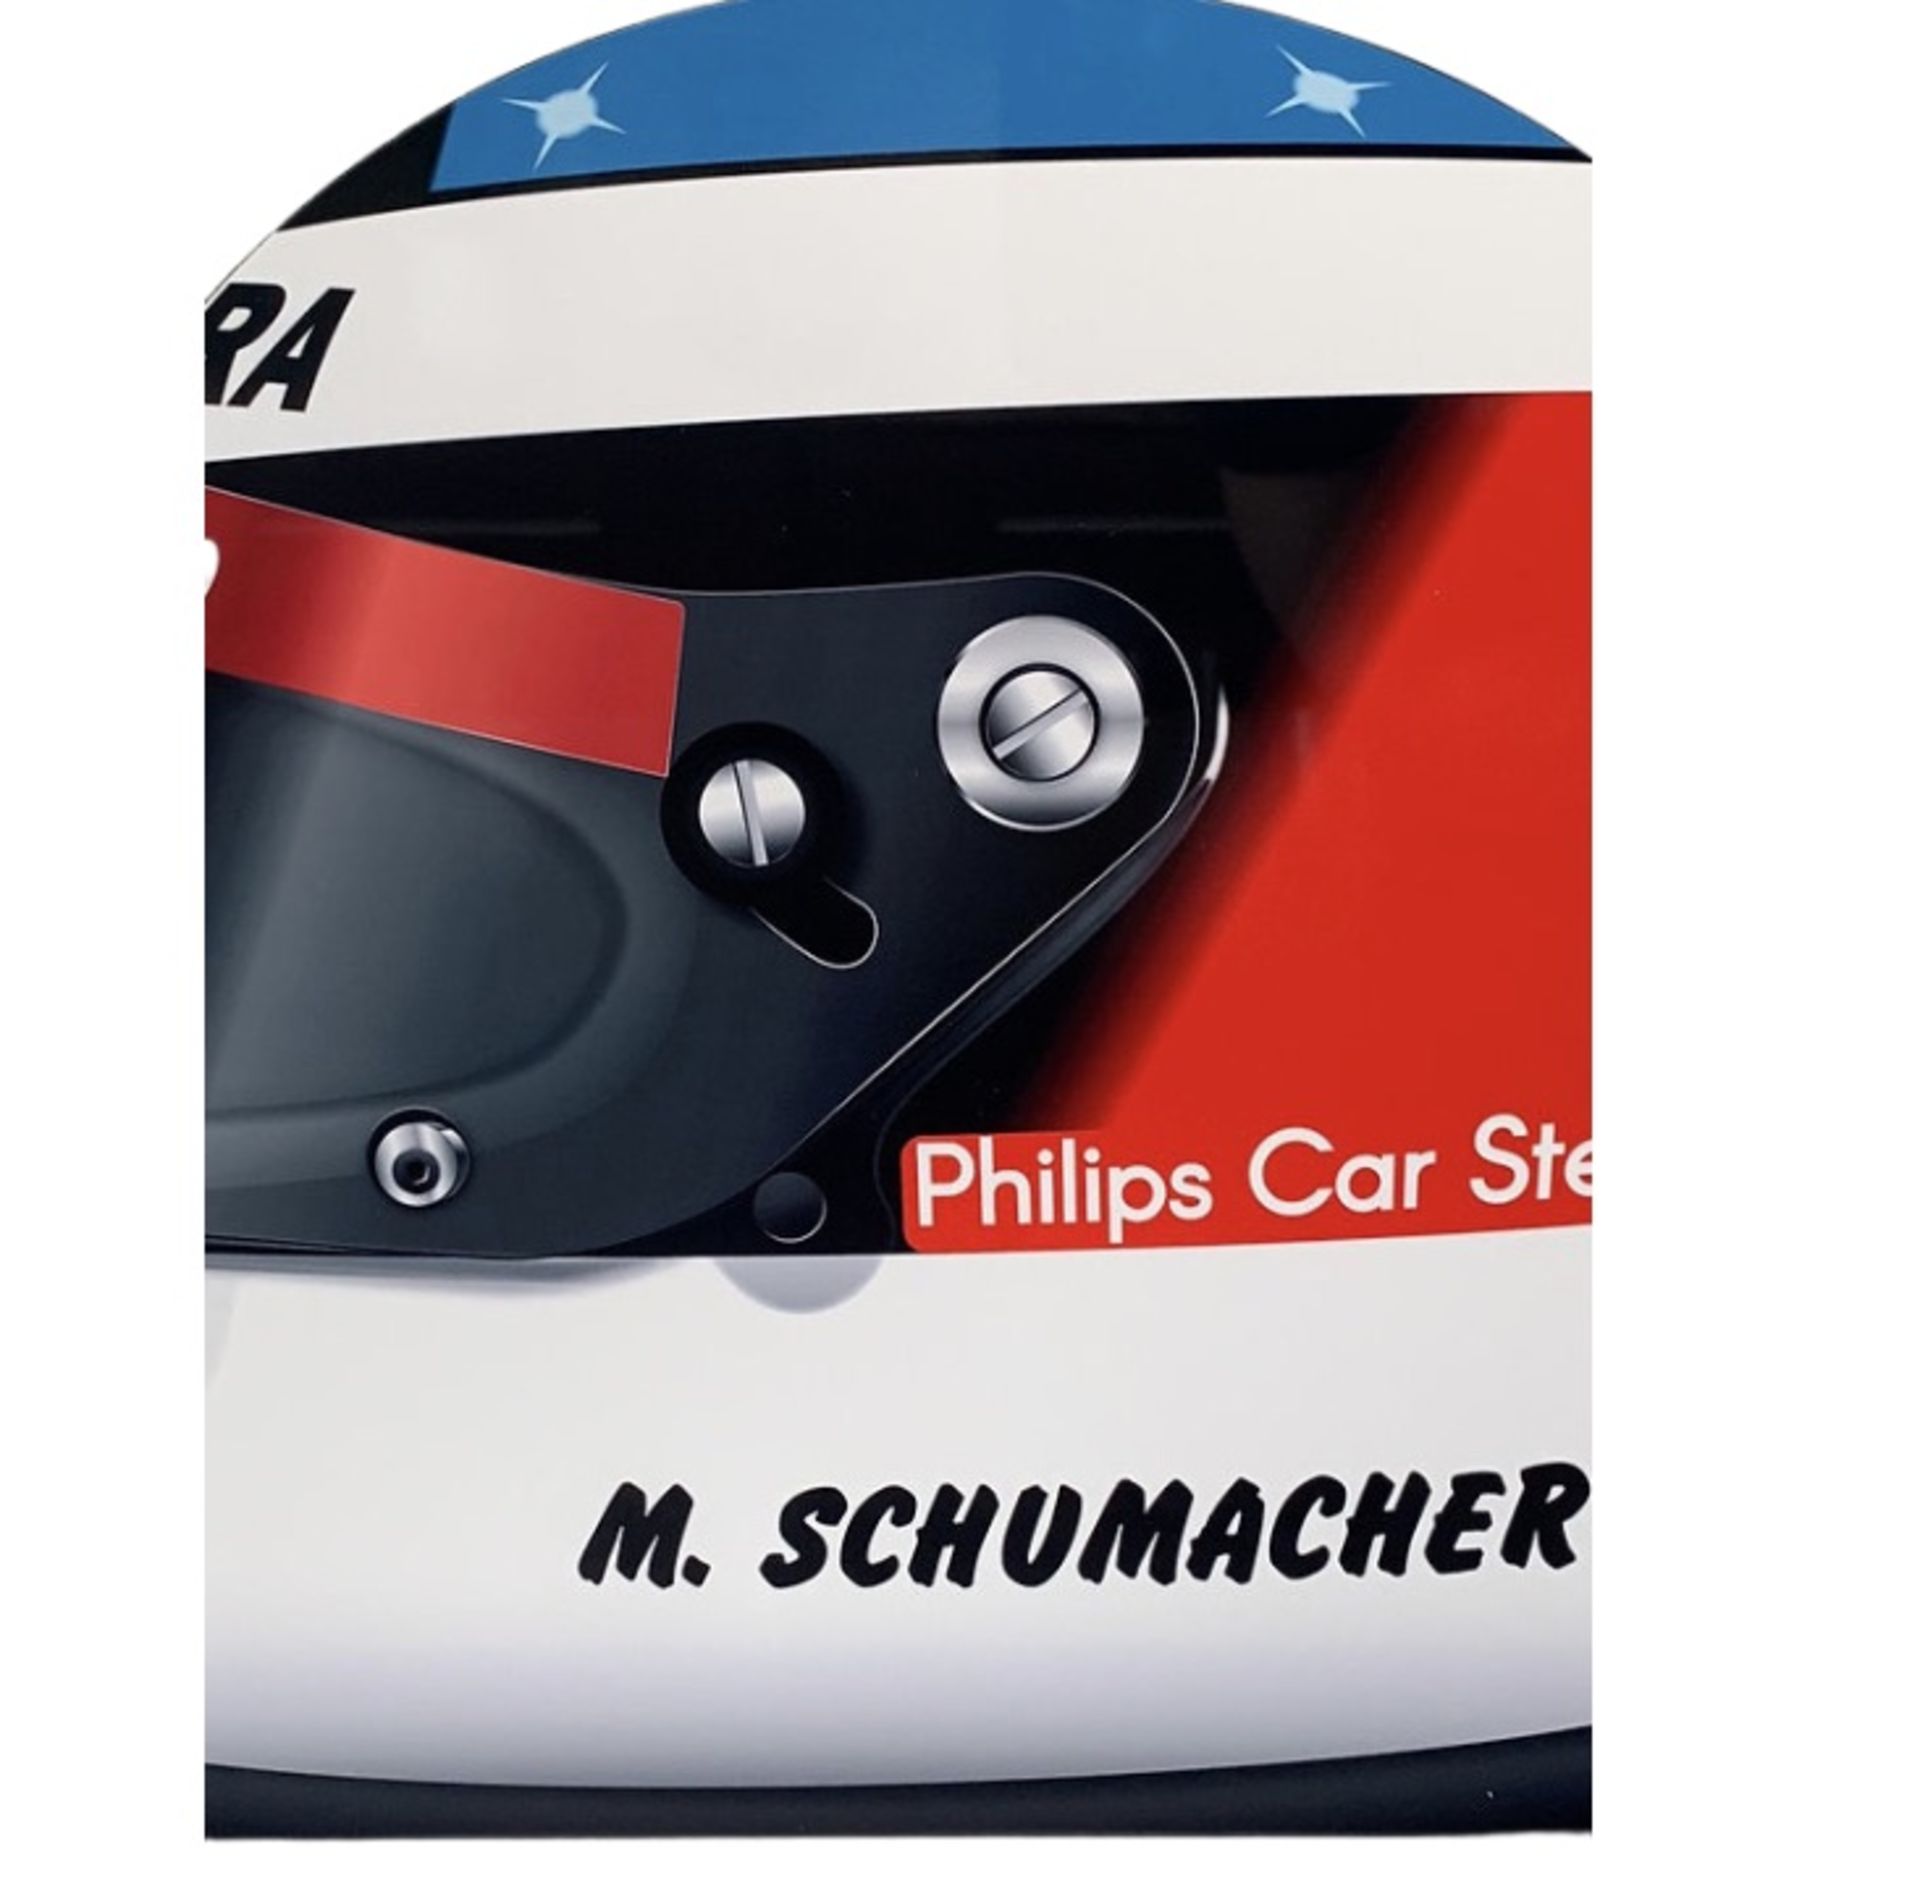 Michael Schumacher 1991 F1 Helmet Aluminum Garage Wall Display - Image 3 of 6